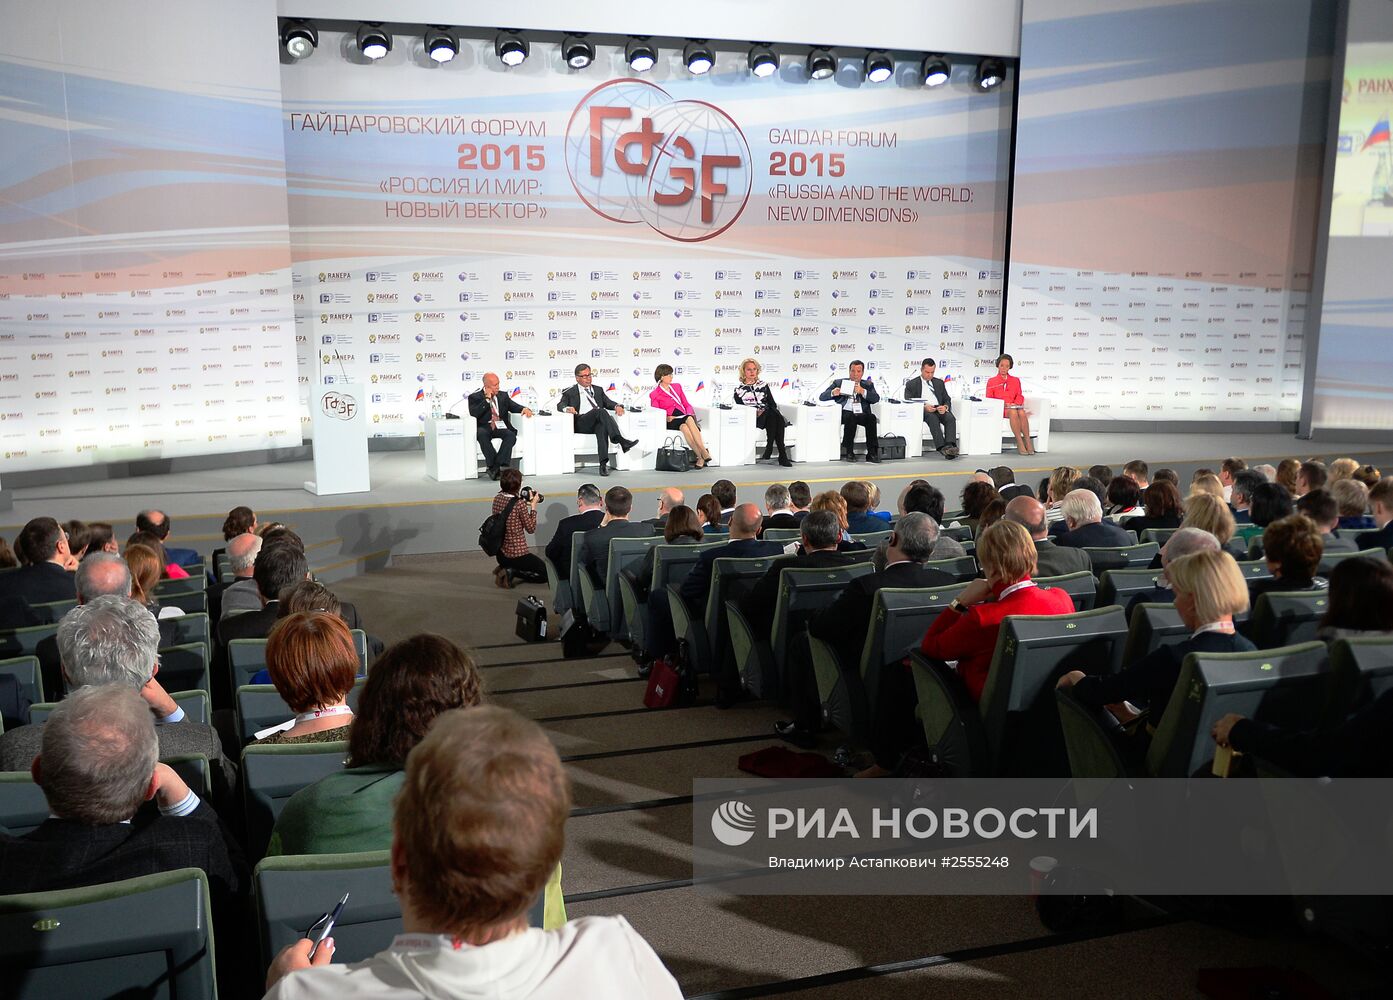 Гайдаровский форум 2015 "Россия и мир : новый вектор". День первый